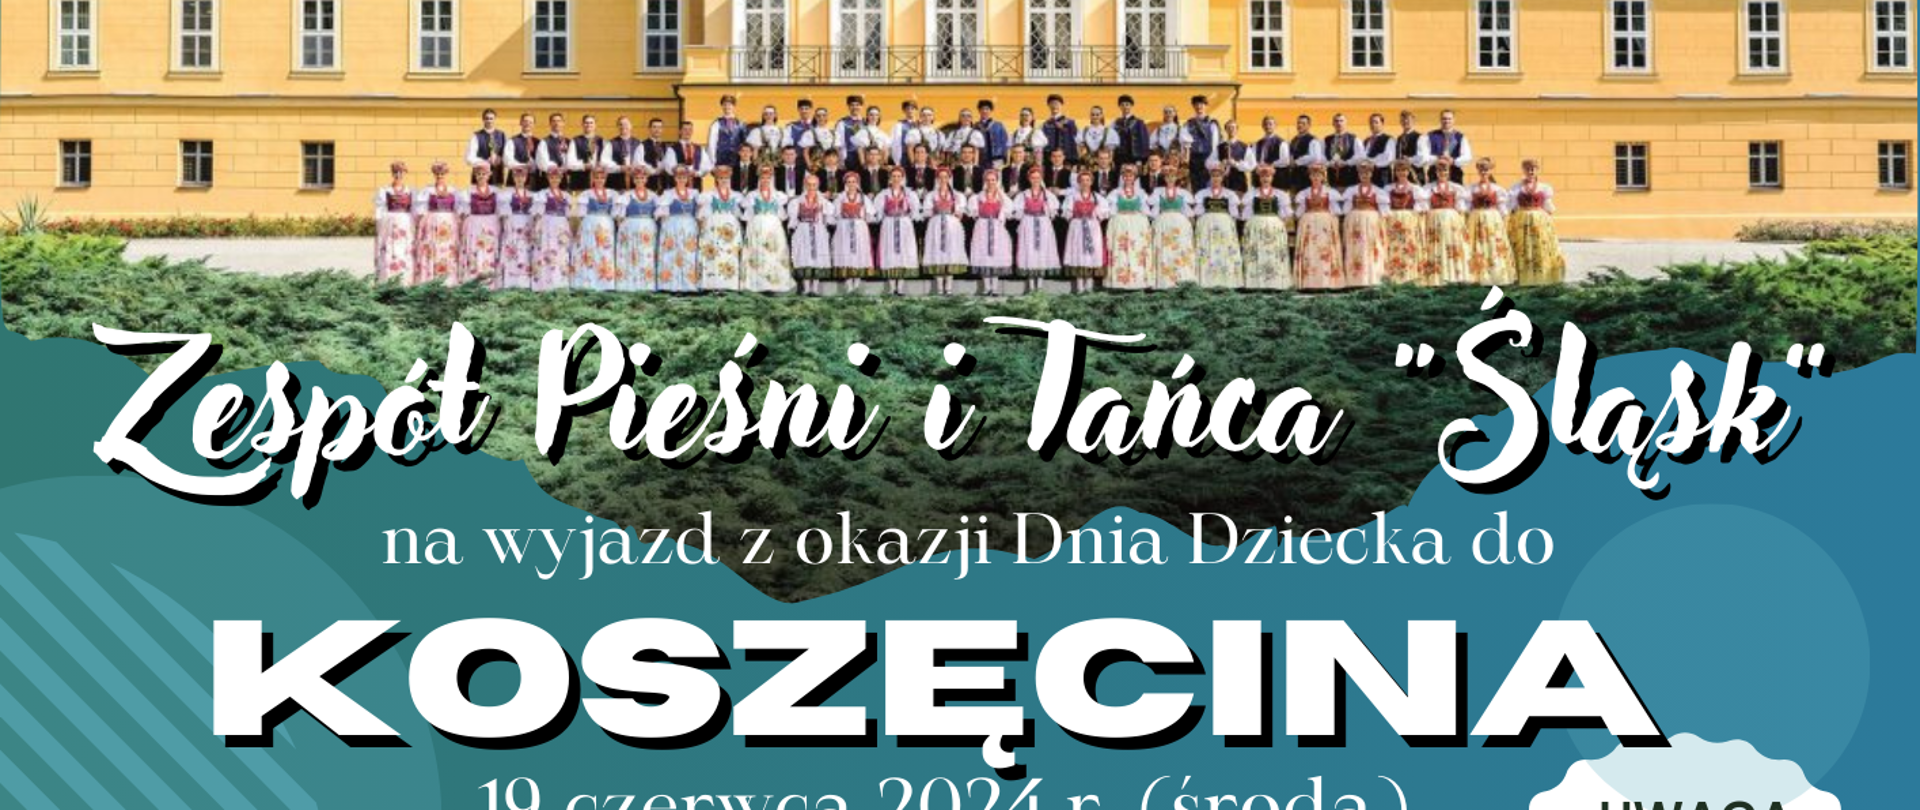 Niebieski plakat, Zespół Pieśni i Tańca wyjazd do Koszęcina